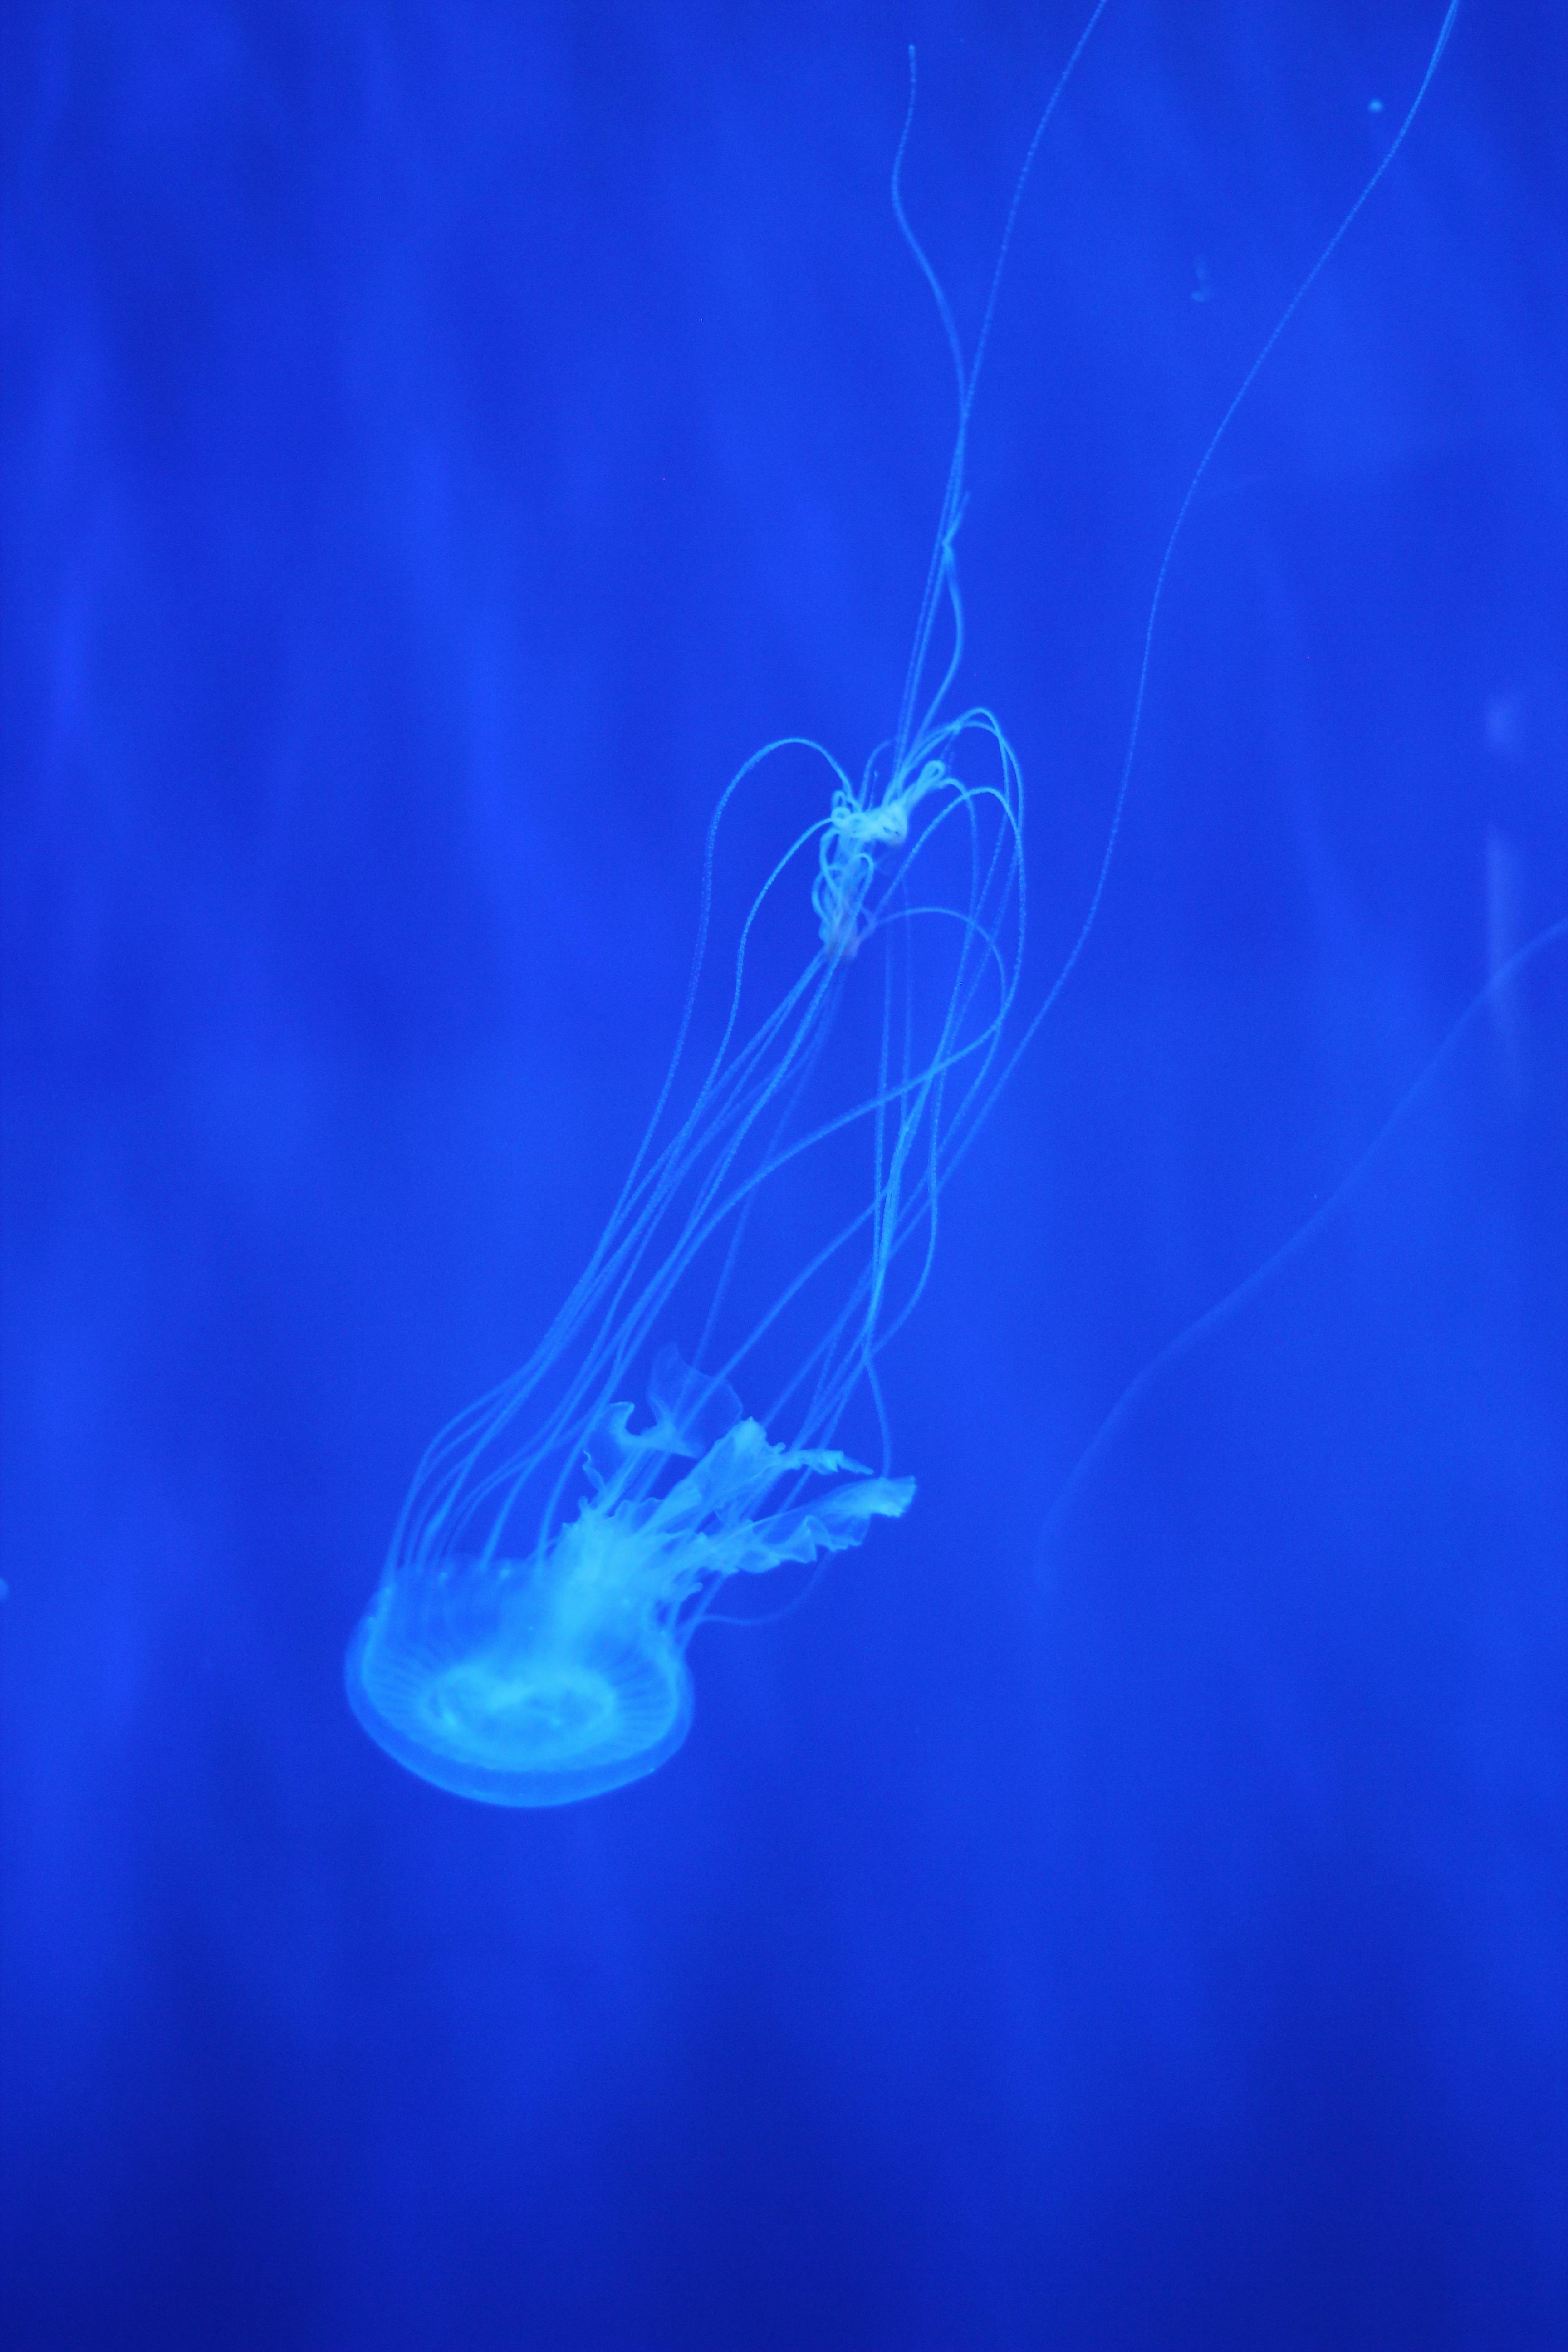 Free stock photo of jellyfish